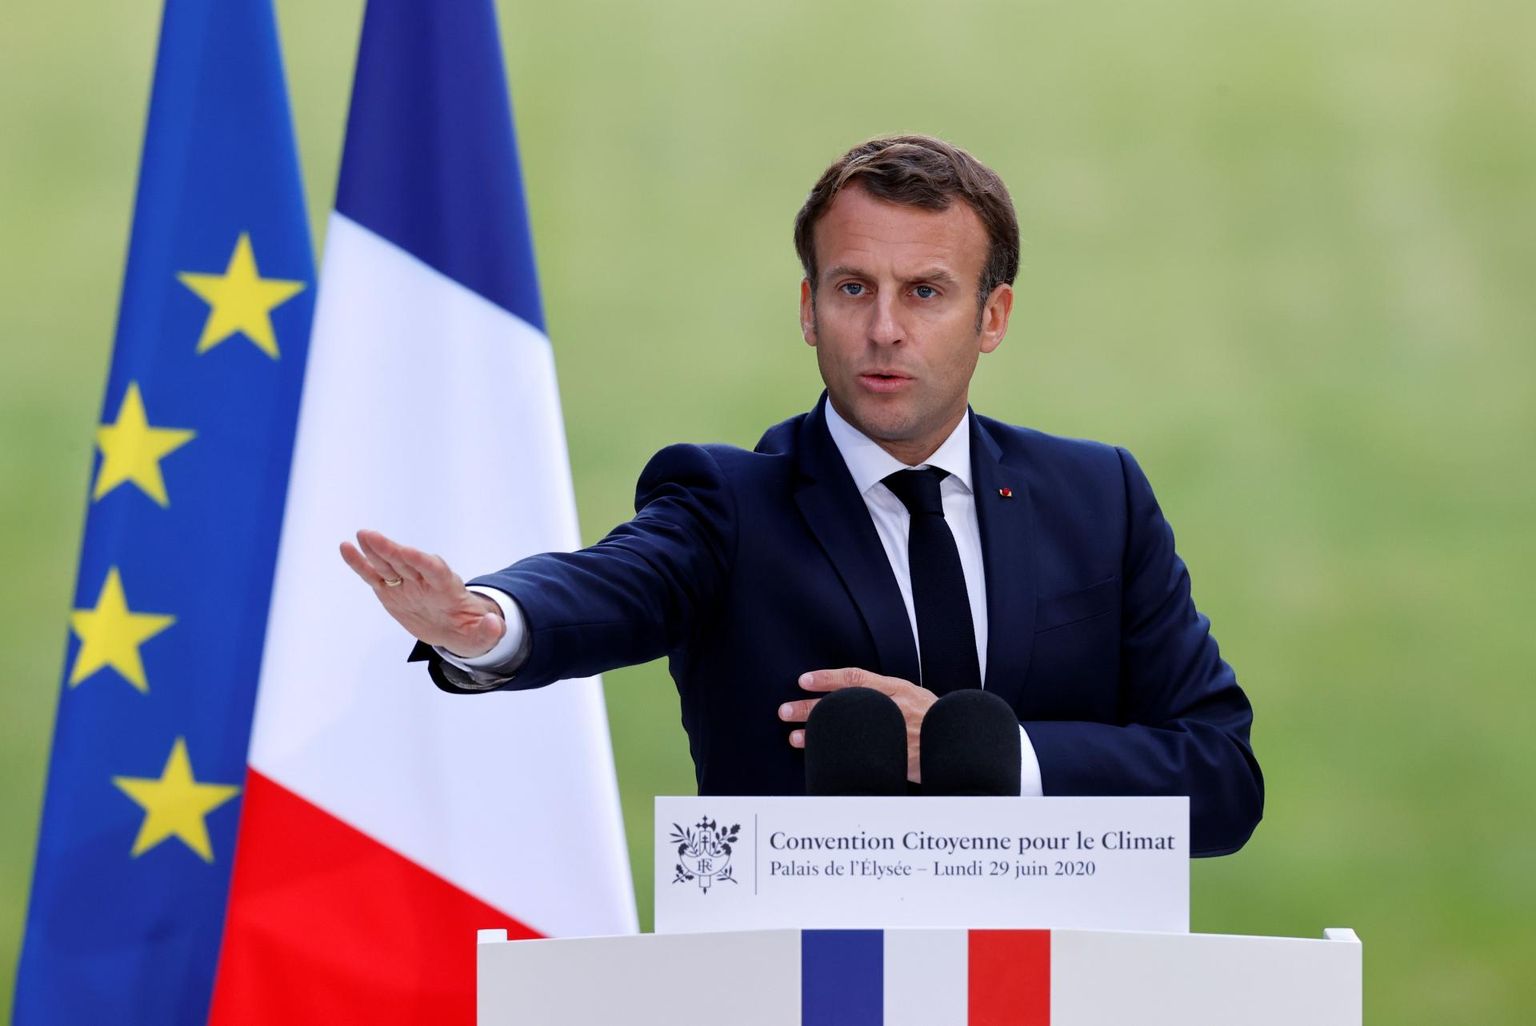 Prantsusmaa president Emmanuel Macron teatas päev pärast kohalikel valimistel rohelistele allajäämist, et järgmise kahe aasta jooksul investeeritakse rohelisemasse majandusse 15 miljardit eurot.